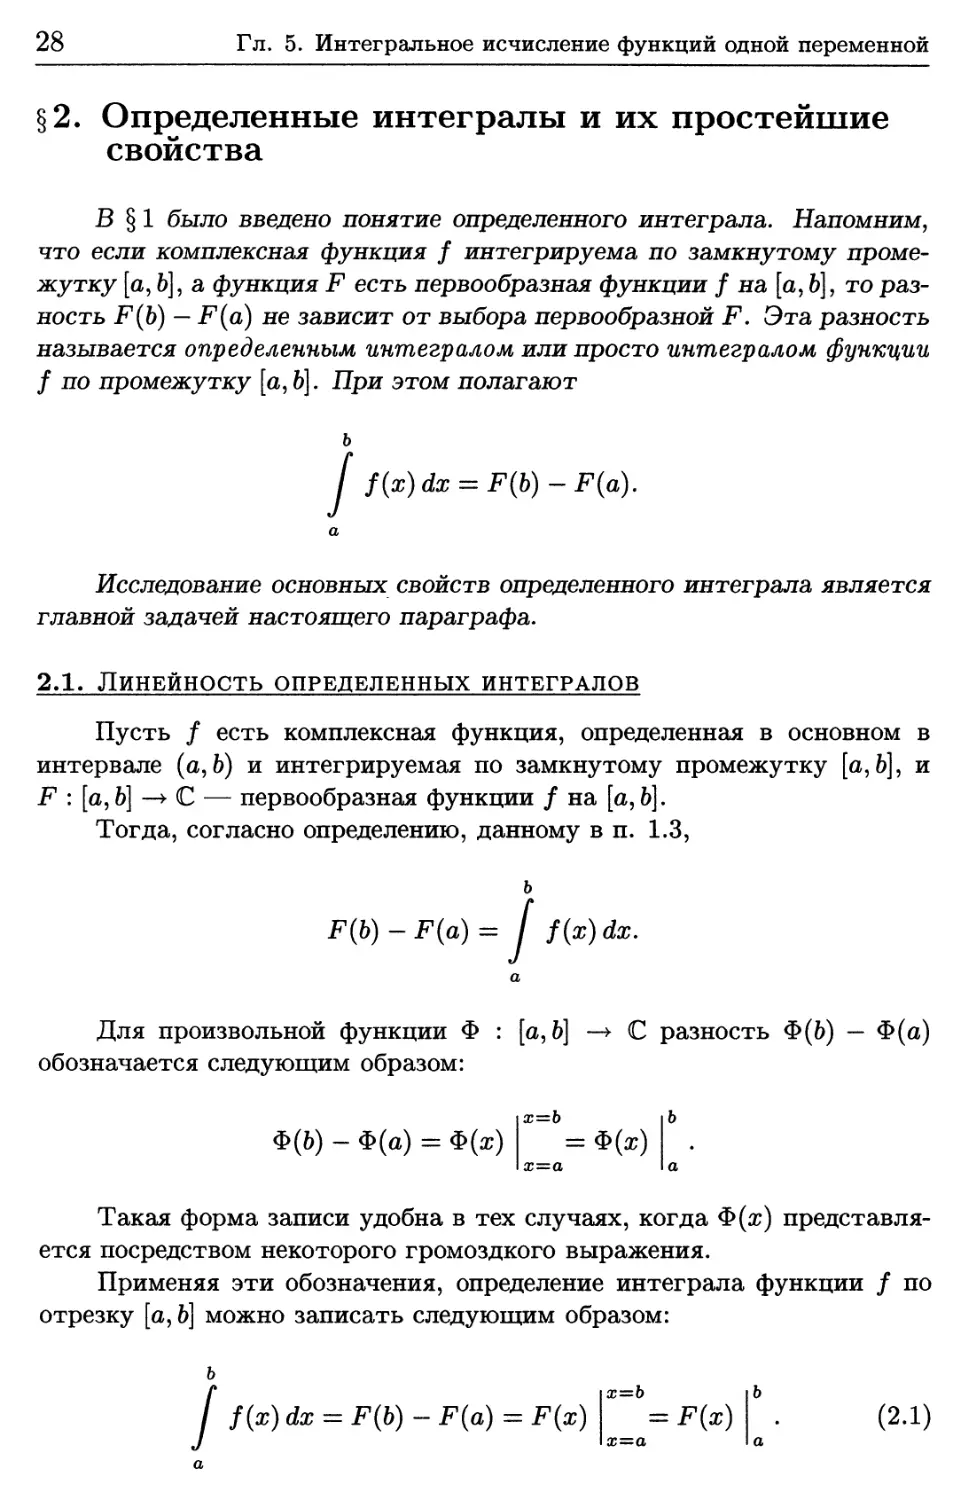 § 2. Определенные интегралы и их простейшие свойства